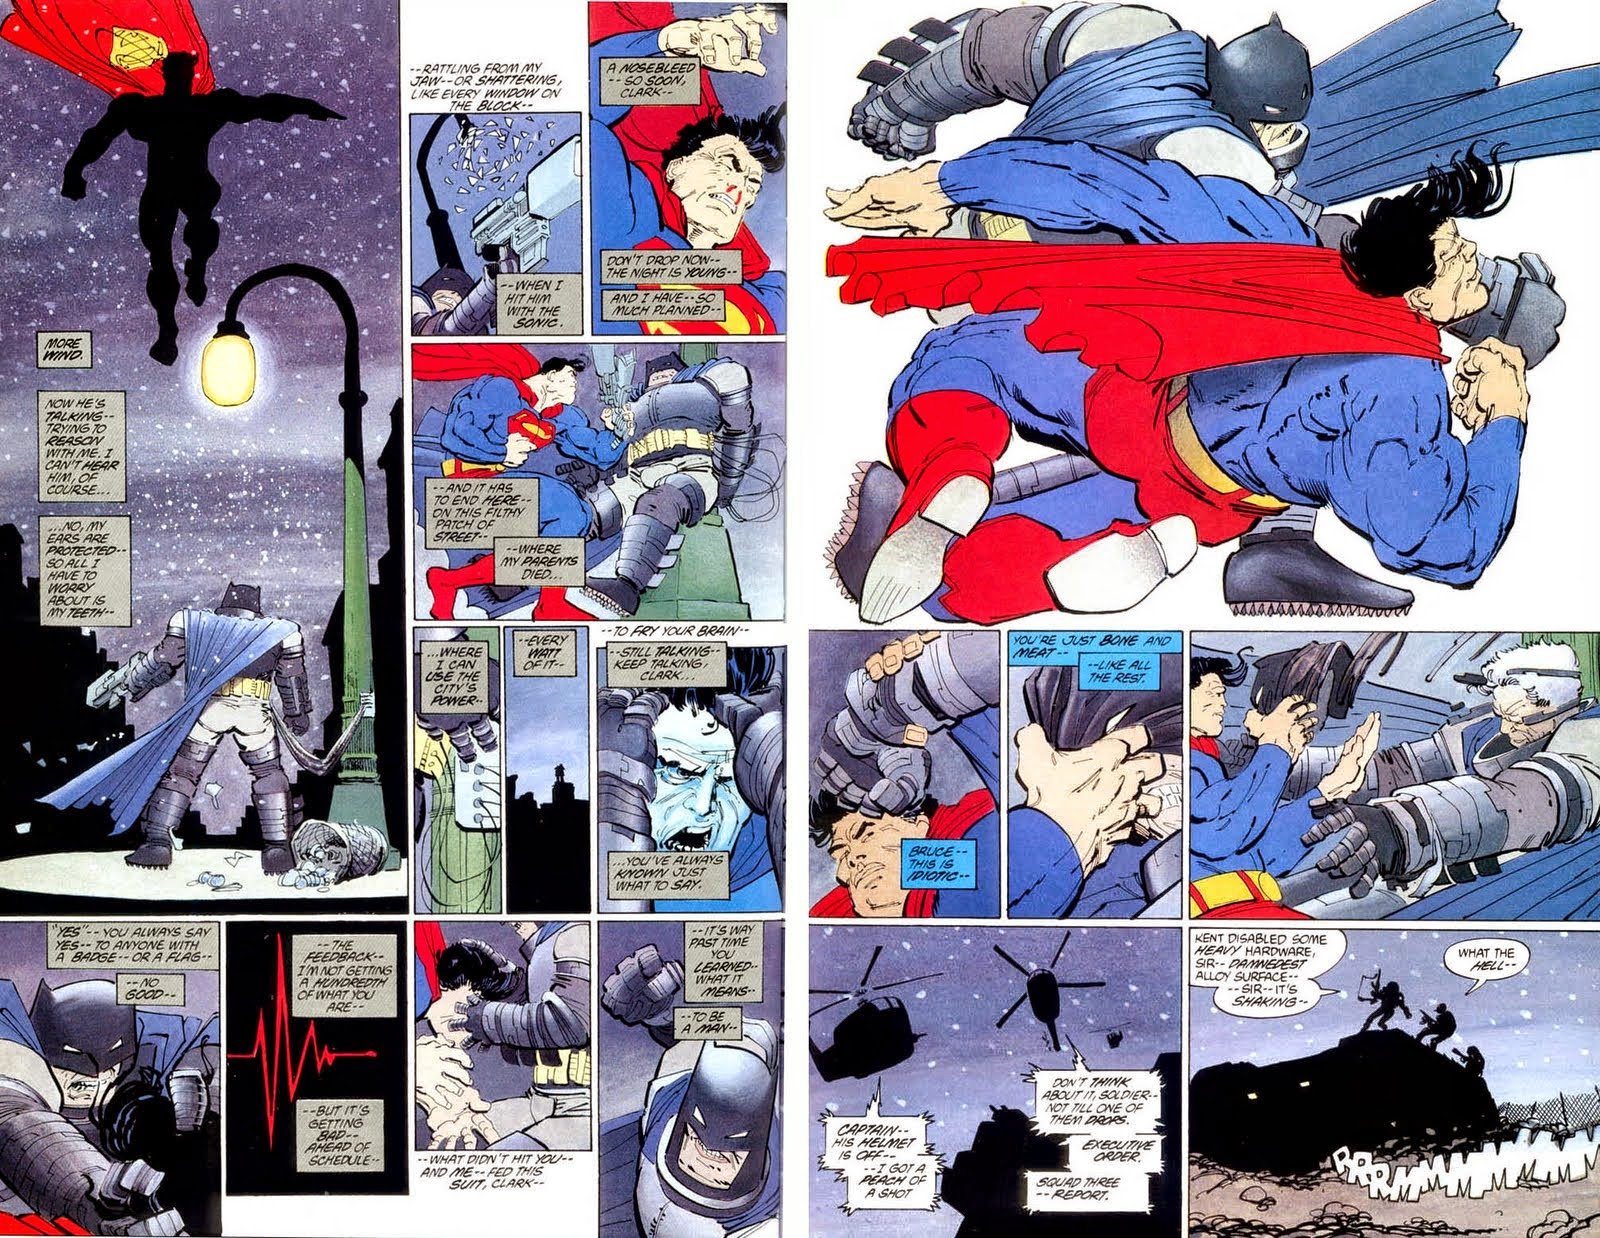 batman v superman, Adventure, Action, Batman, Superman, Dawn, Justice Wallpaper